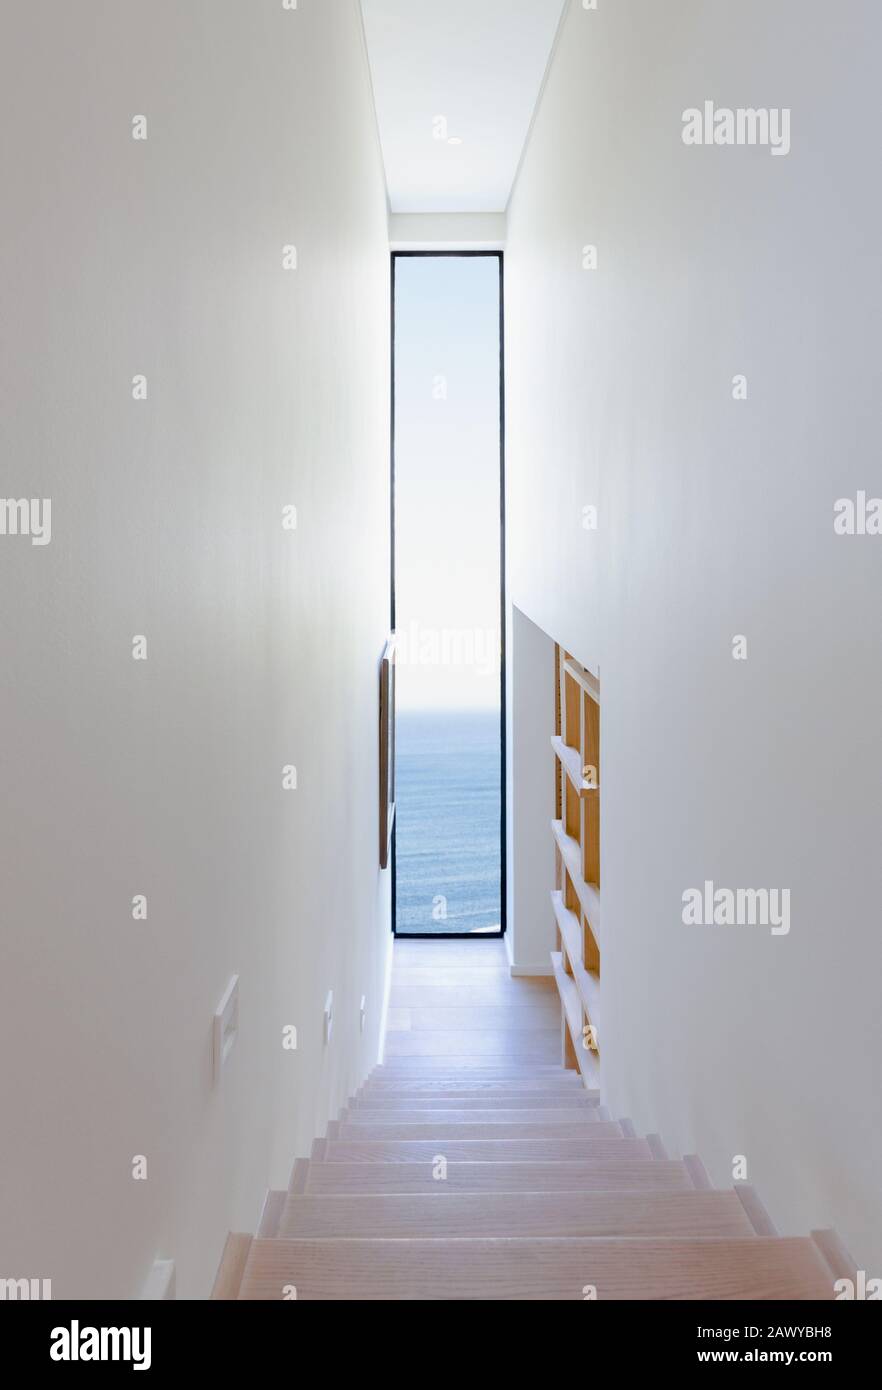 Escalera que da a una ventana larga con vista al mar en un interior moderno y lujoso Foto de stock